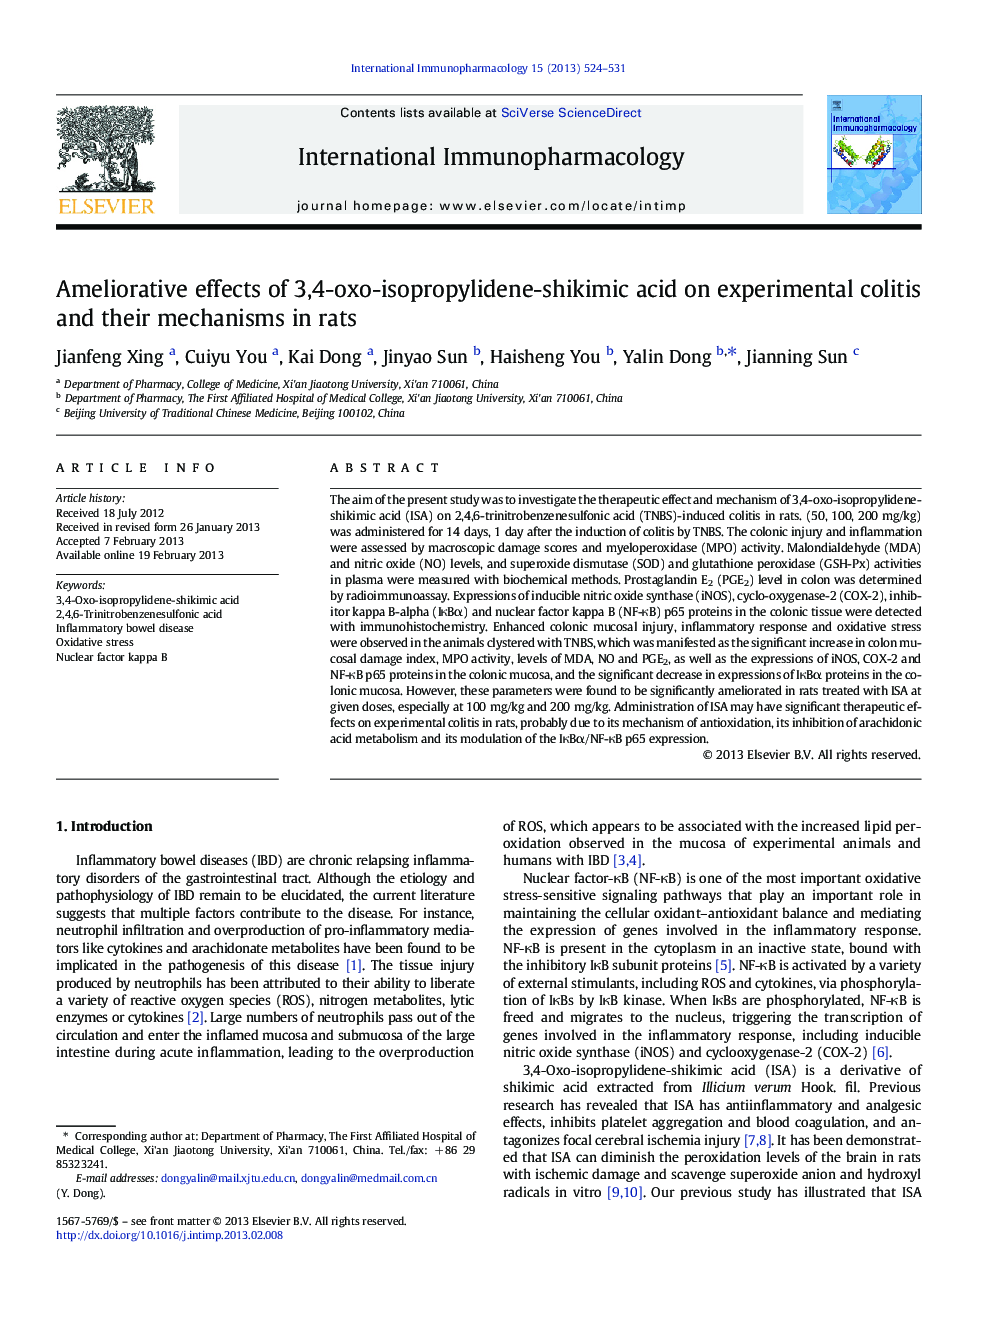 اثرات بهبودی اسید 3،4-اکسو-ایزوپروپیلیدین-شیکیمیک بر کولیت های آزمایشگاهی و مکانیسم های آنها در موش صحرایی 